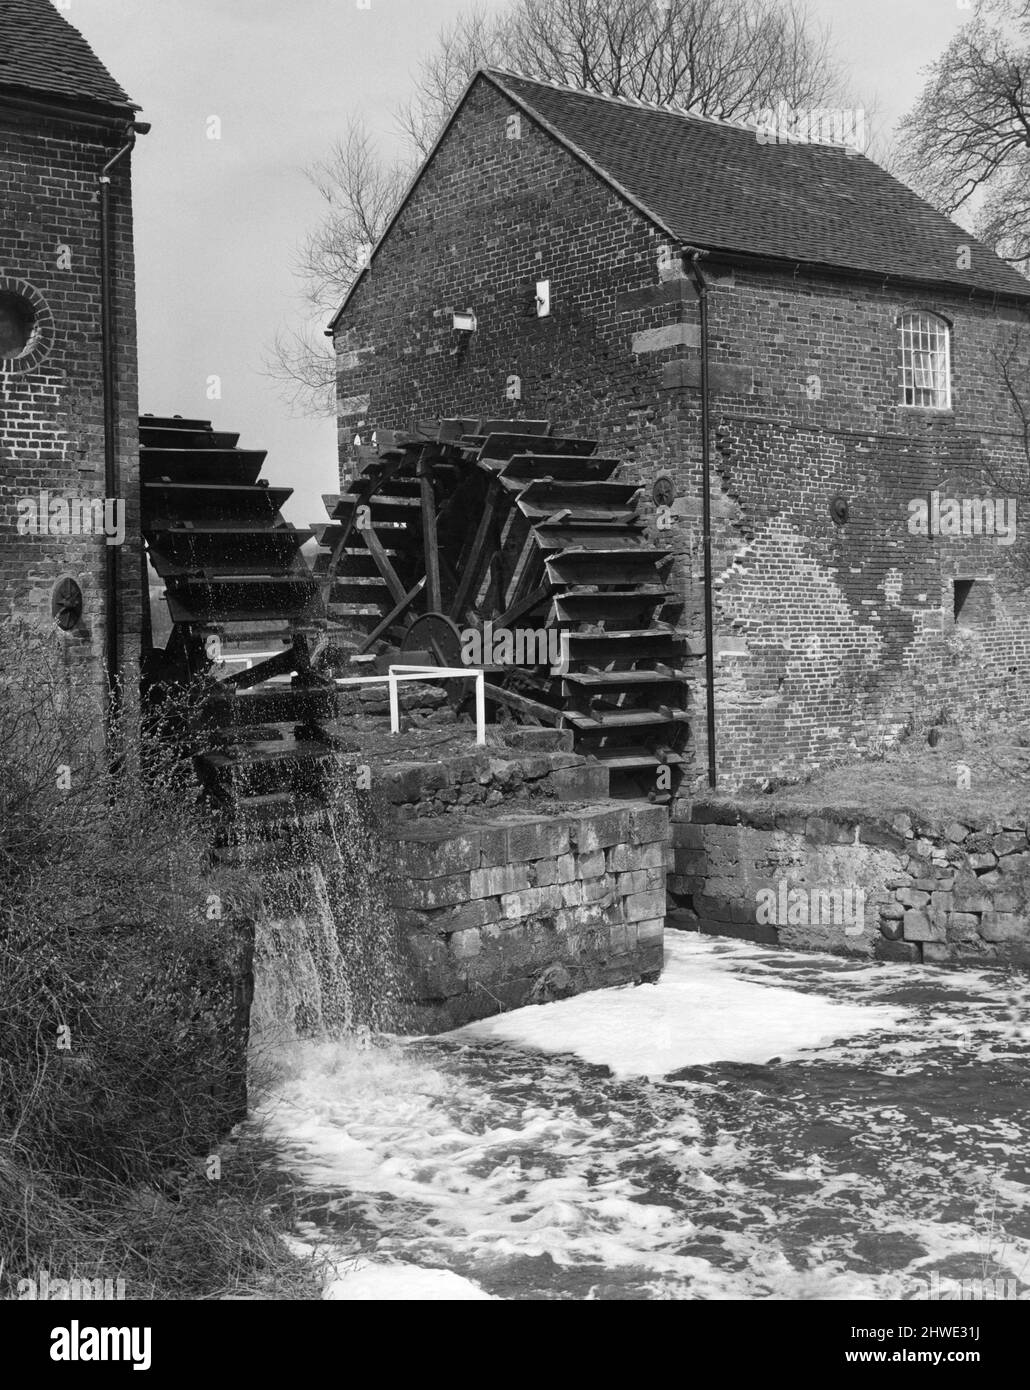 Le moulin à eau du 17th siècle près de Cheddleton dans le Staffordshire. Construit pour moudre le maïs, il est devenu plus tard un moulin à silex et est maintenant en cours de restauration comme un musée en activité. 1970 Banque D'Images